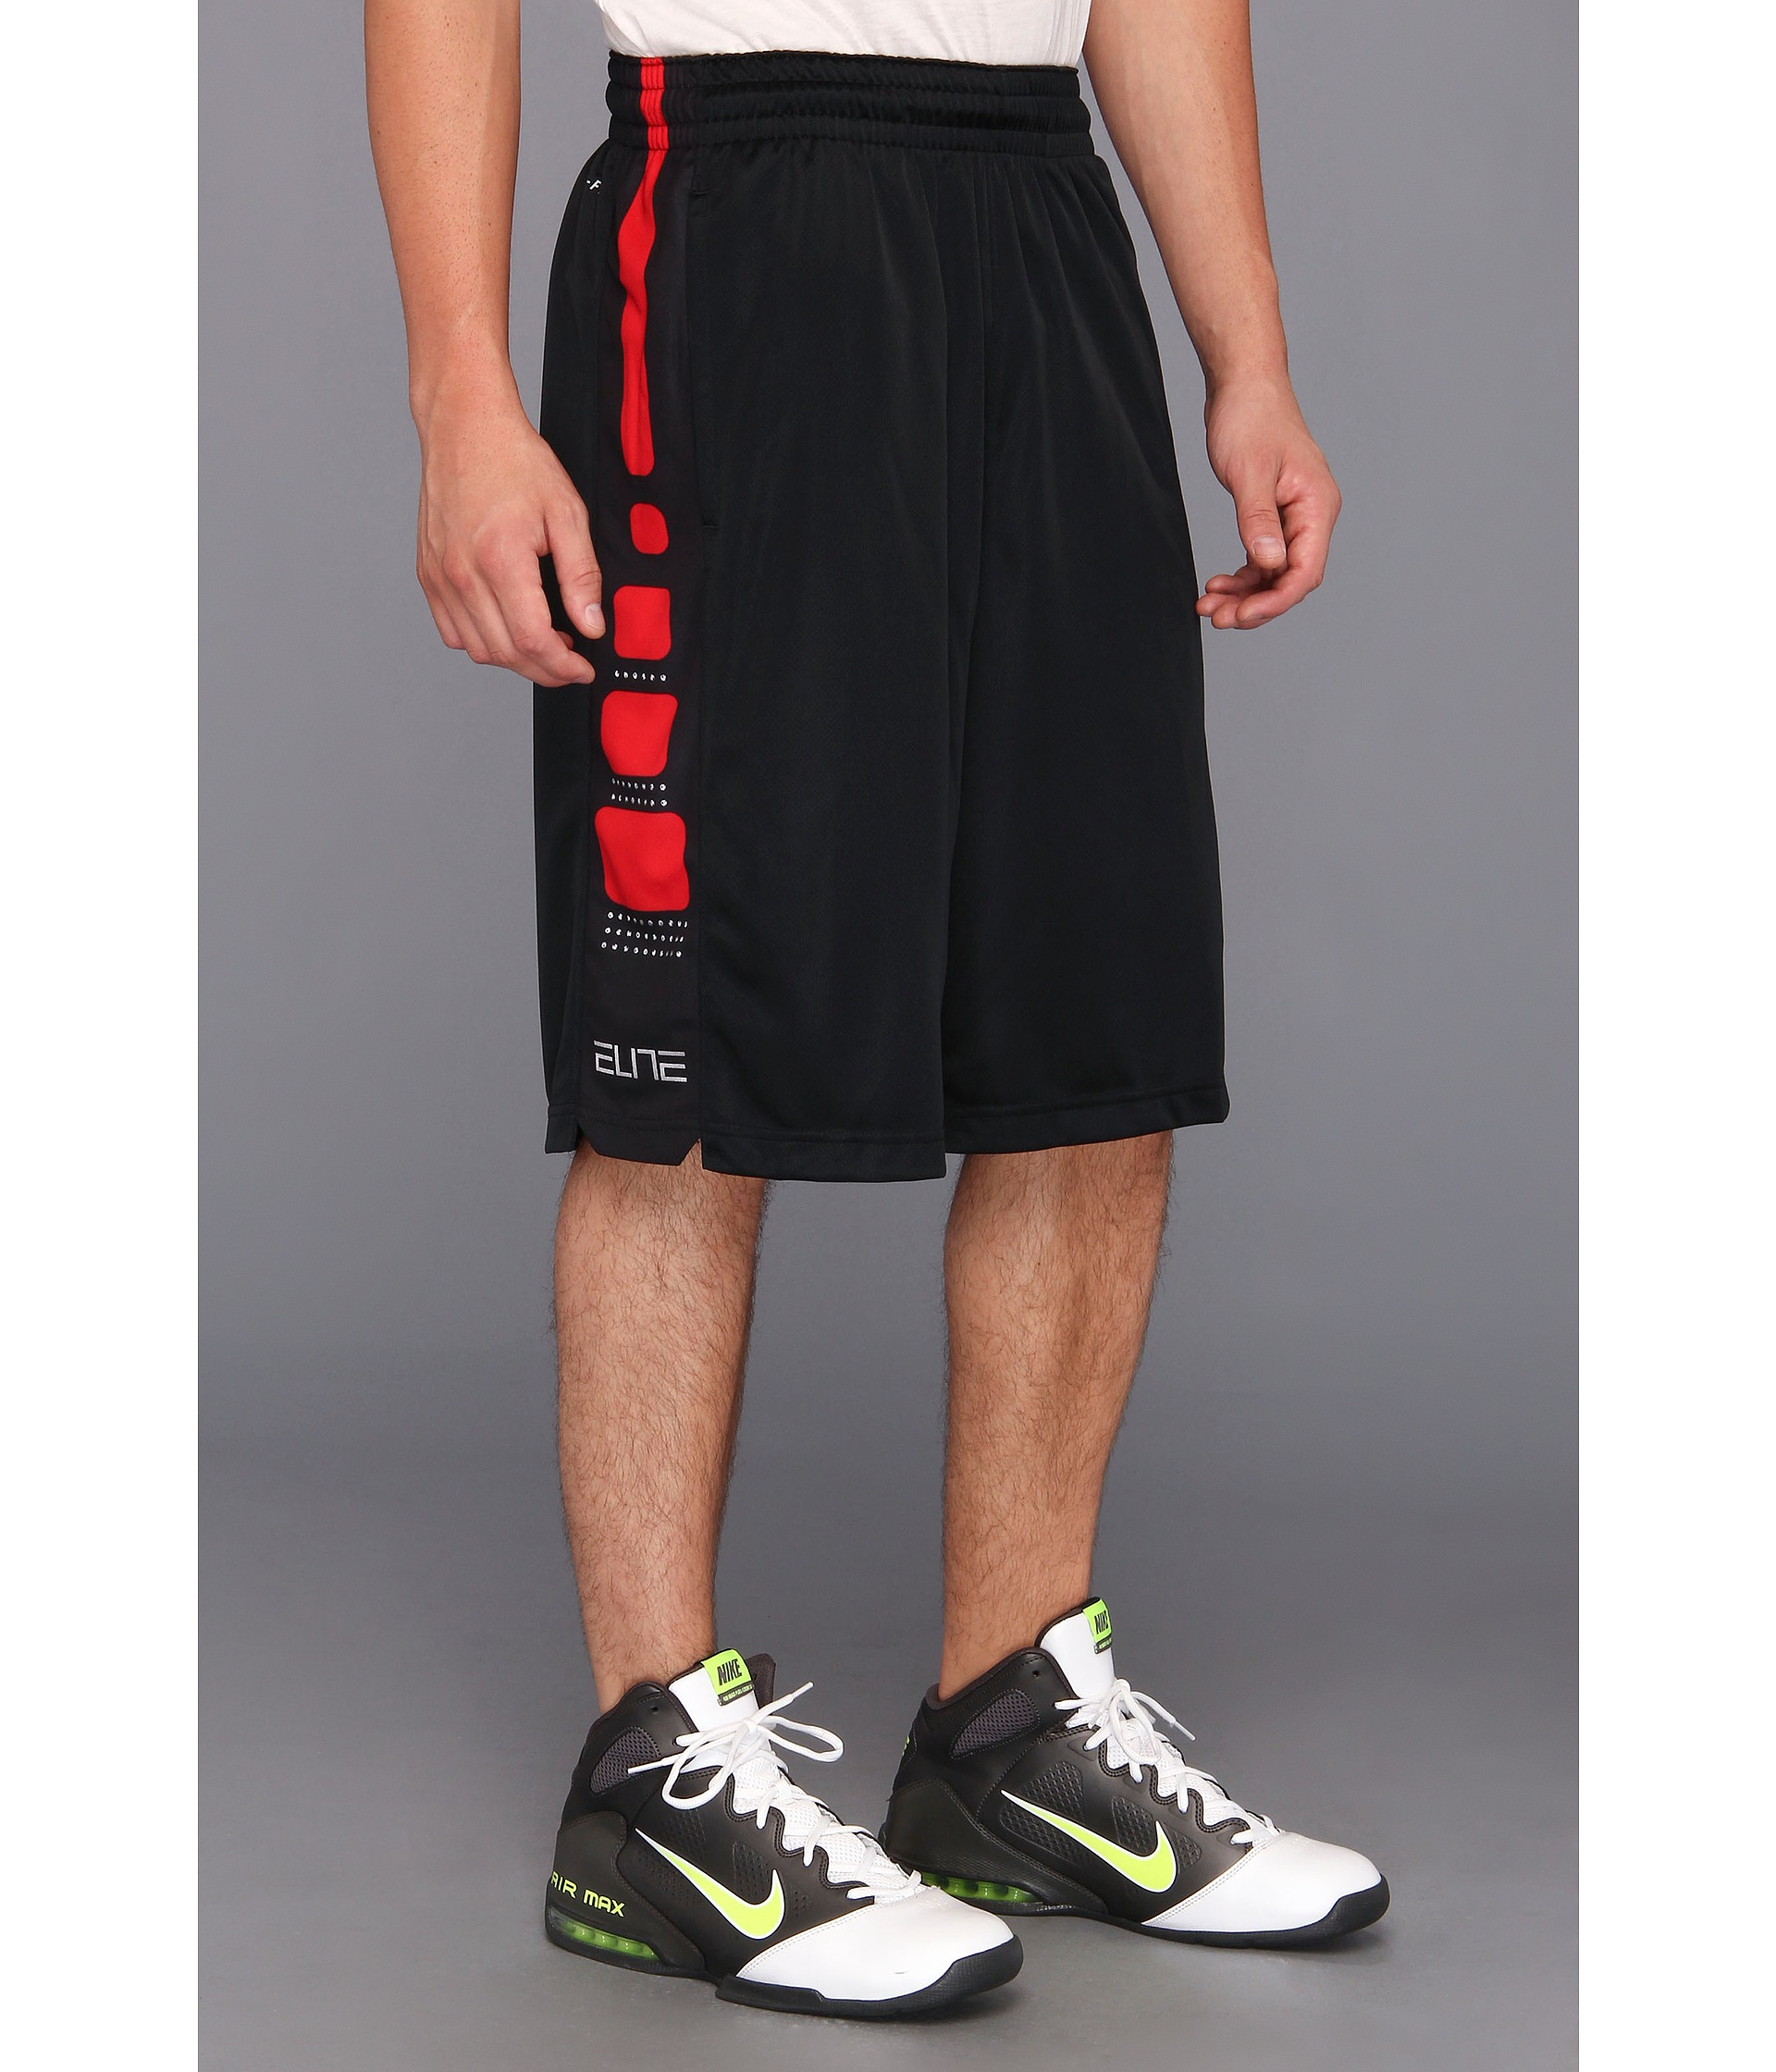 Nike Elite Stripe Short in Black/White/University Red (Black) for Men | Lyst